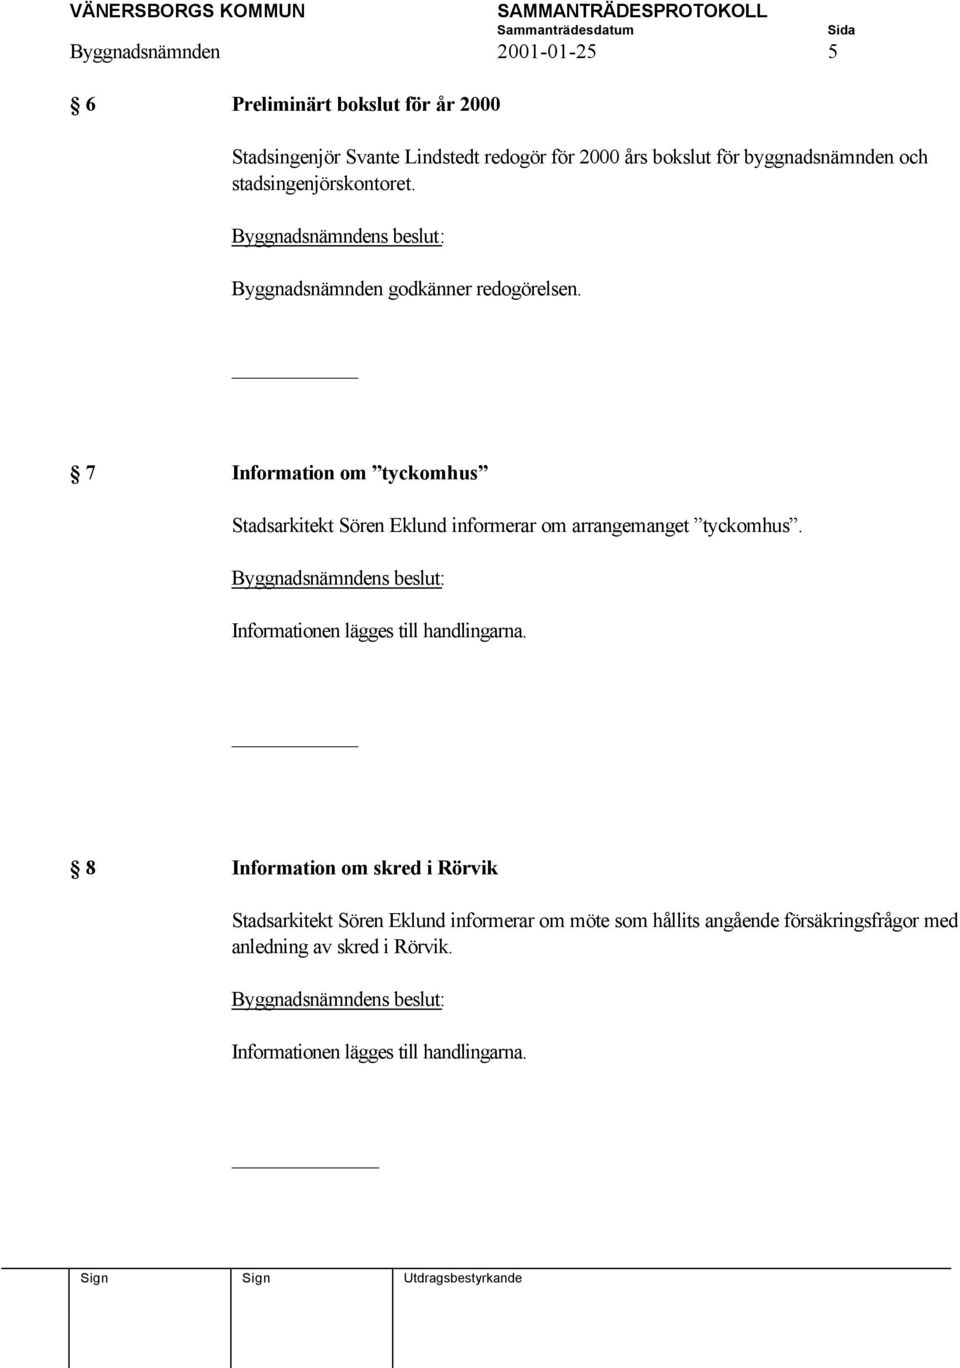 7 Information om tyckomhus Stadsarkitekt Sören Eklund informerar om arrangemanget tyckomhus.